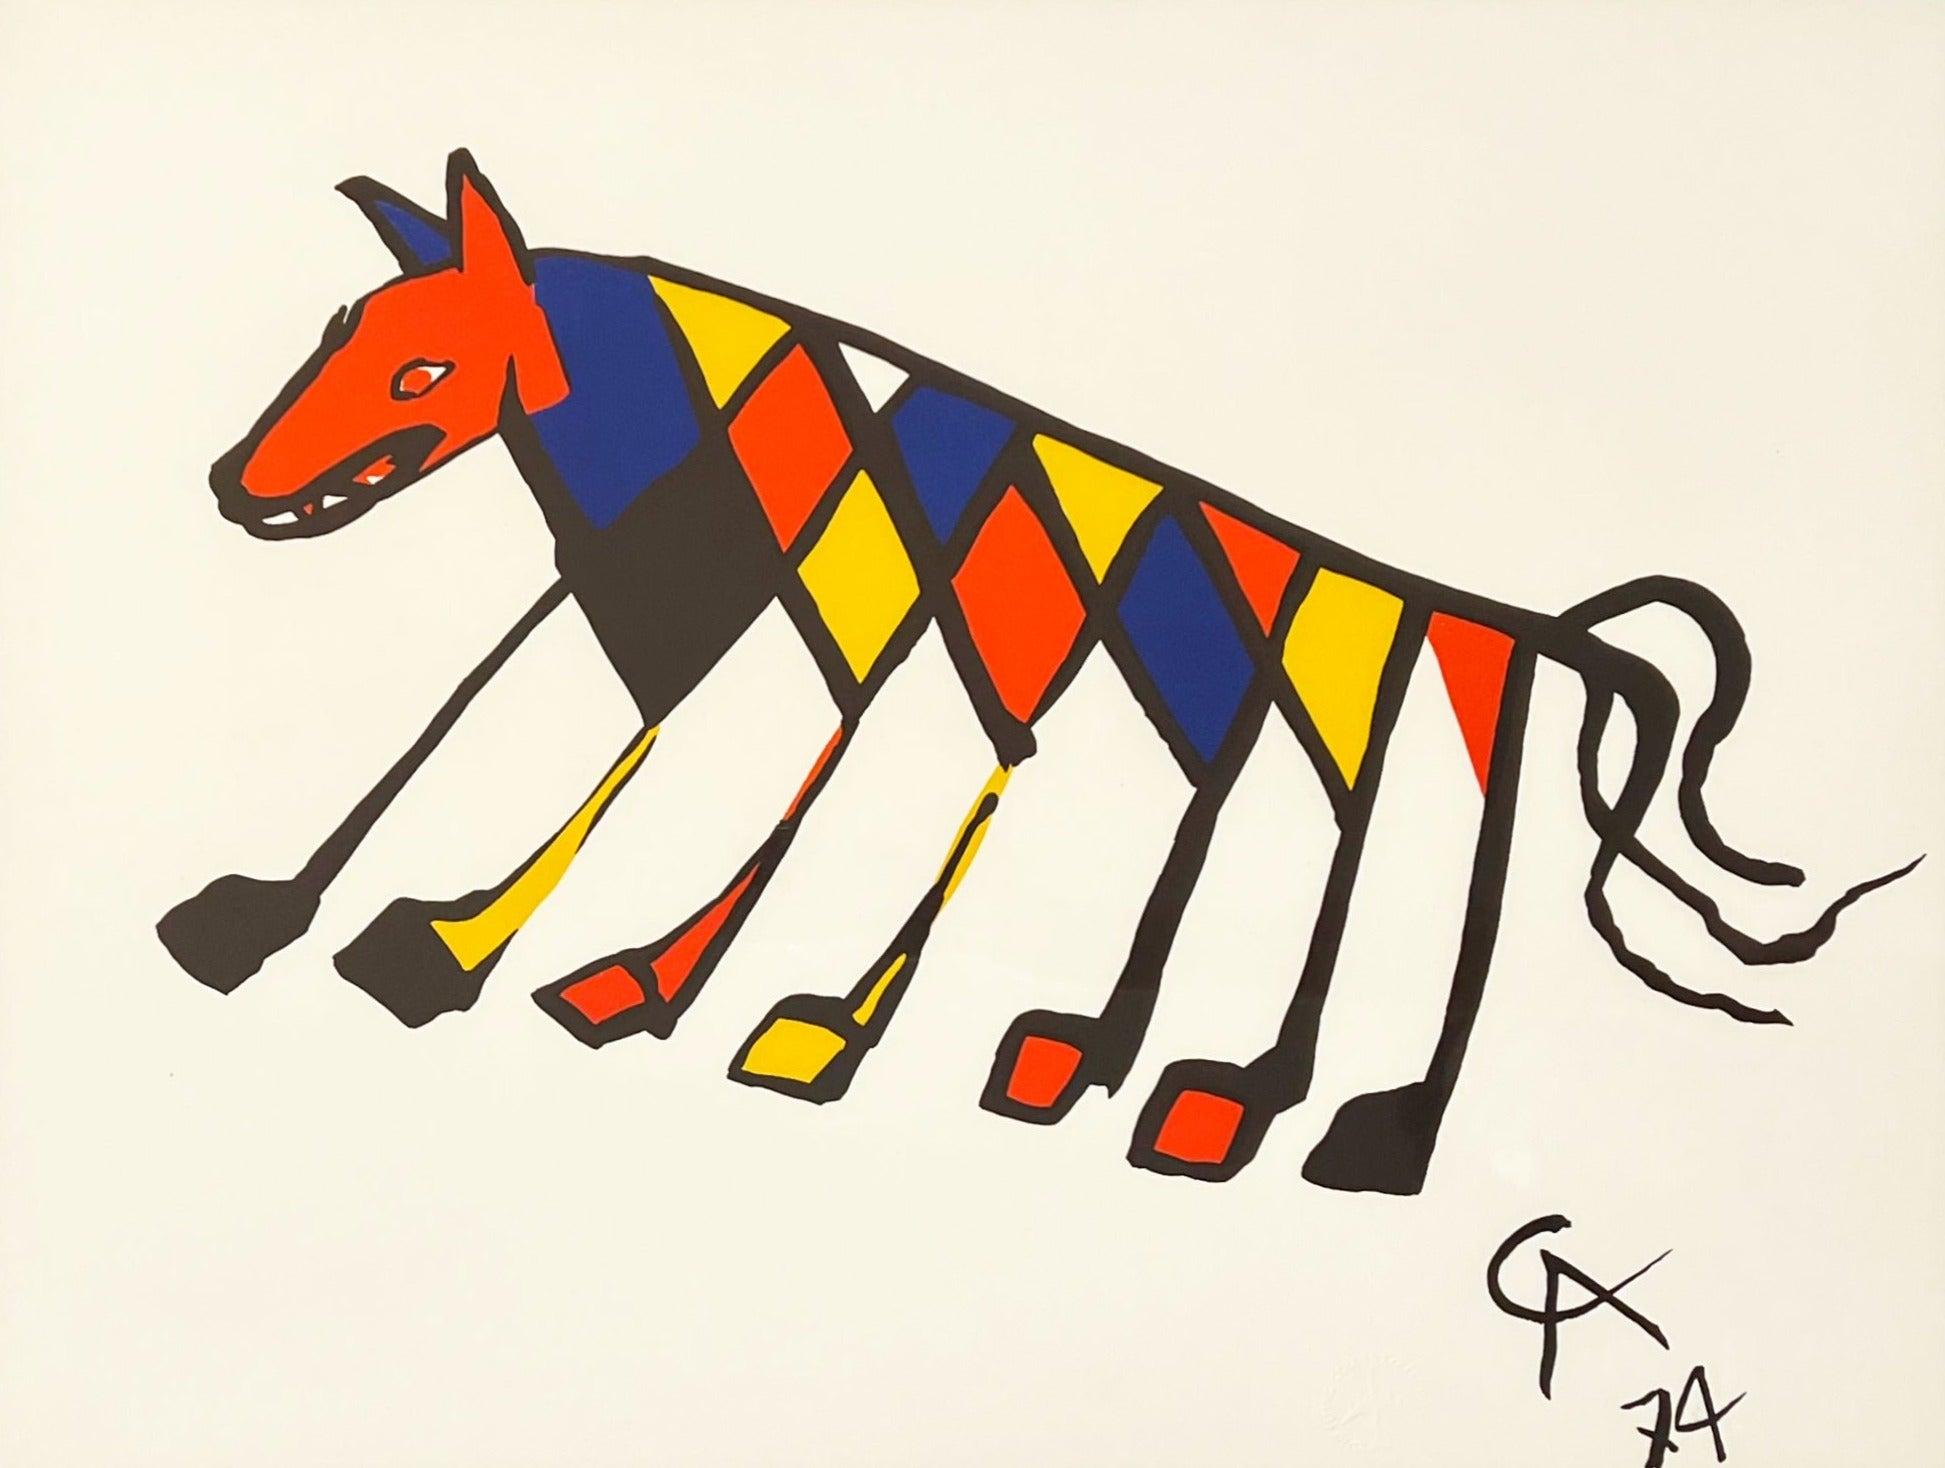 Animal Print Alexander Calder - Beastie, de Flying Colors